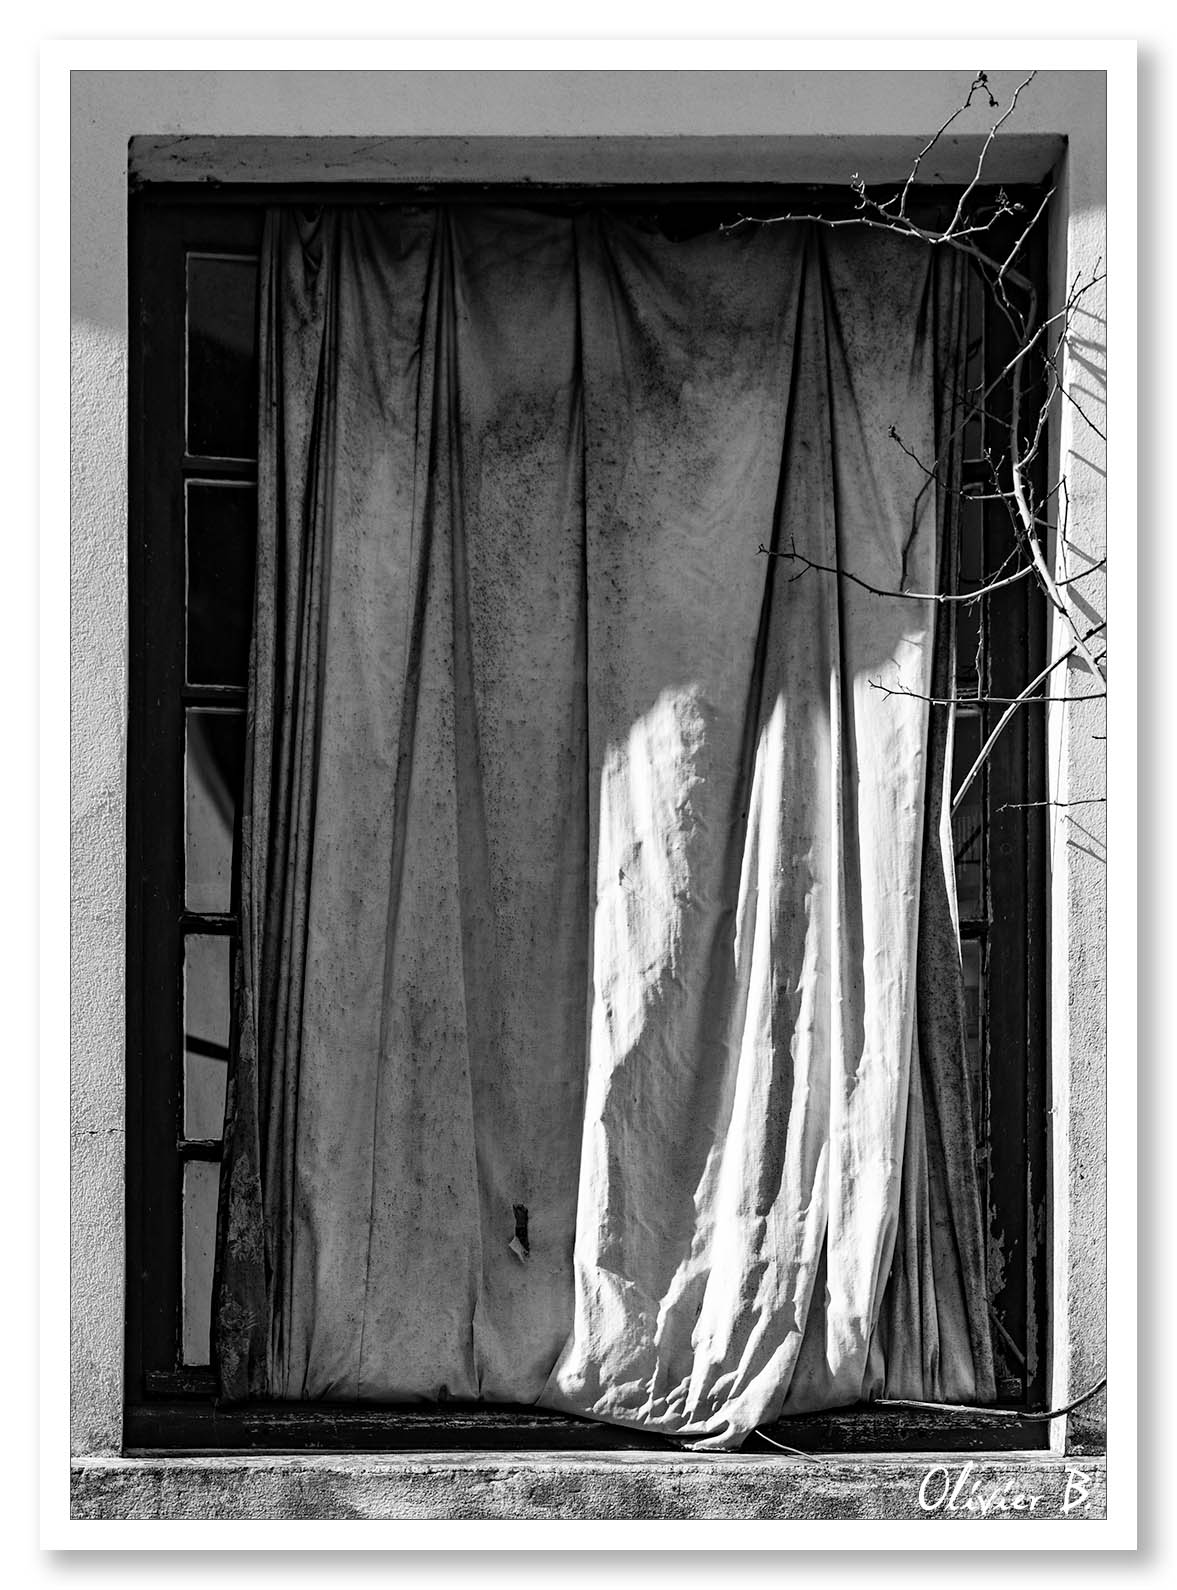 Fenêtre fantomatique, où le vent déplace le rideau et anime les ombres. Les tiges des lierres avancent comme des mains spectrales